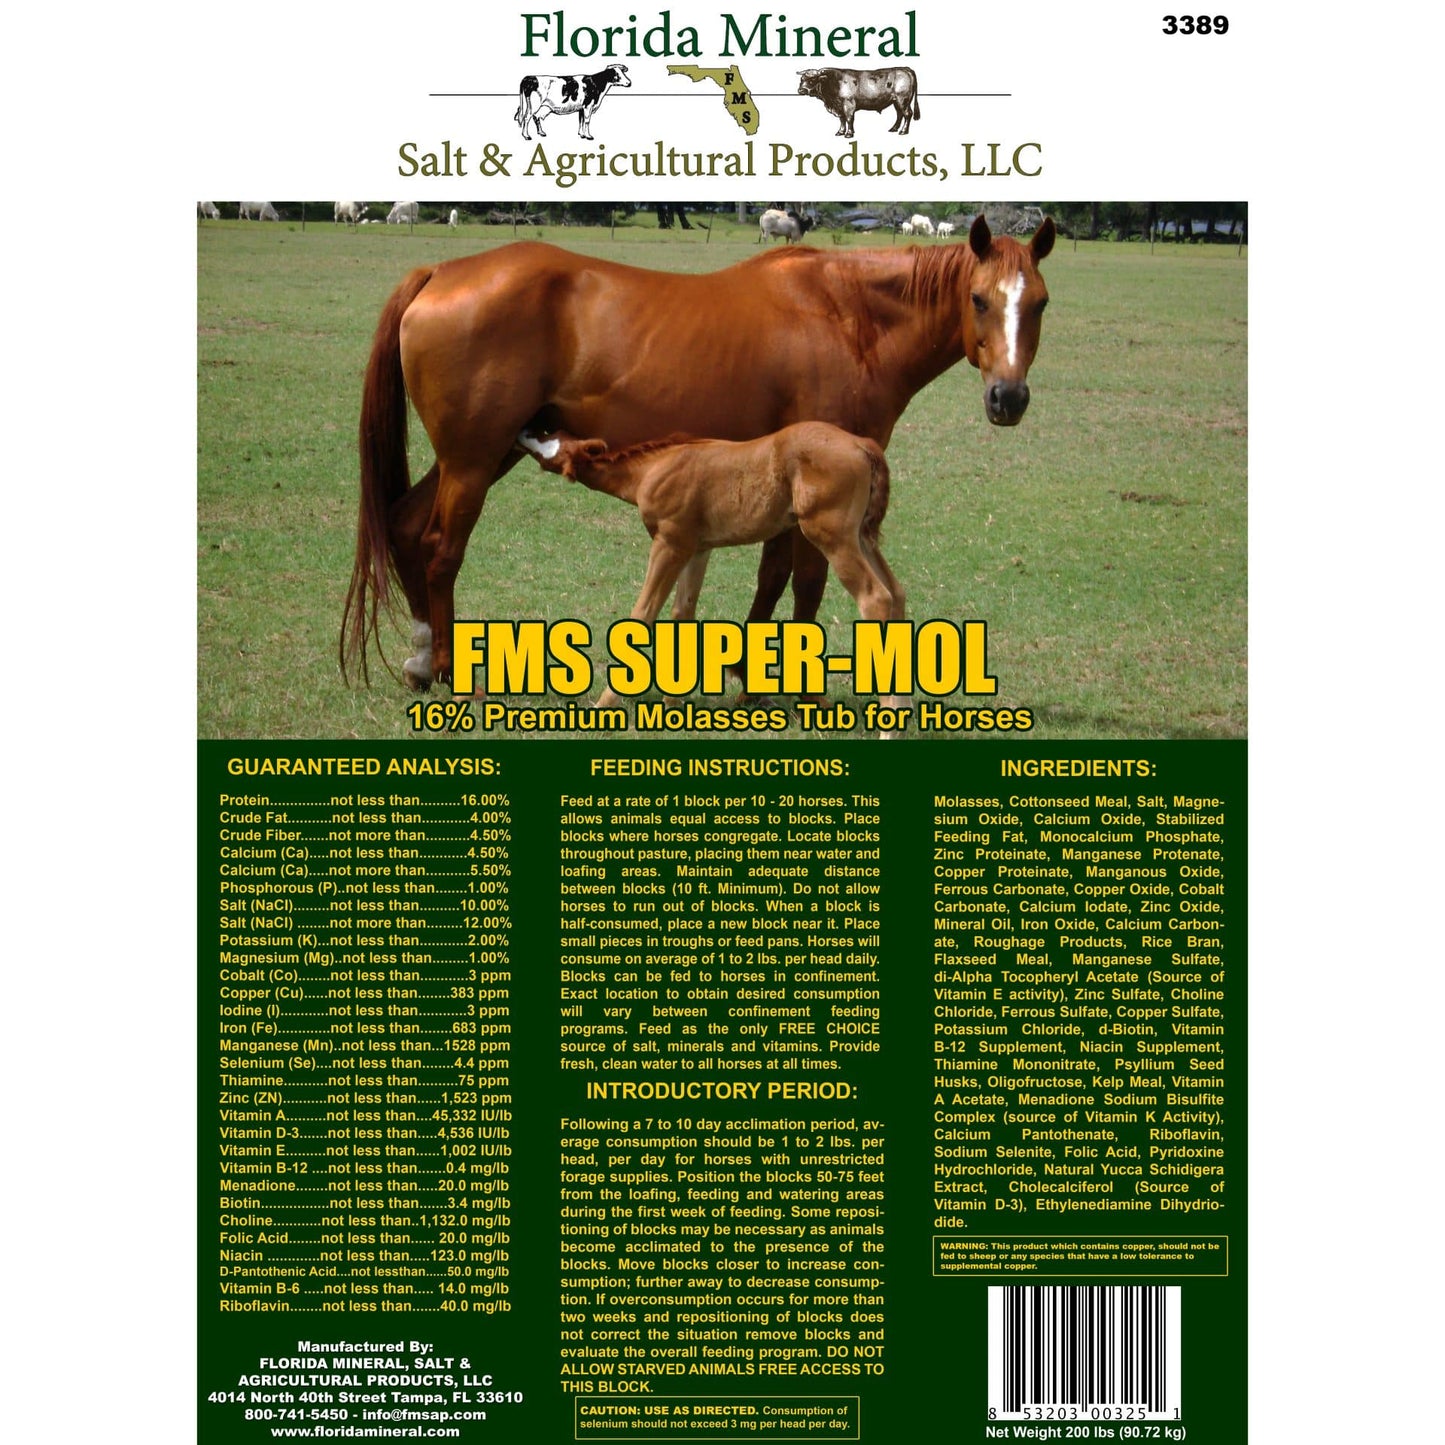 Super-Mol 16% Premium Molasses for Horses (200lb Tub)